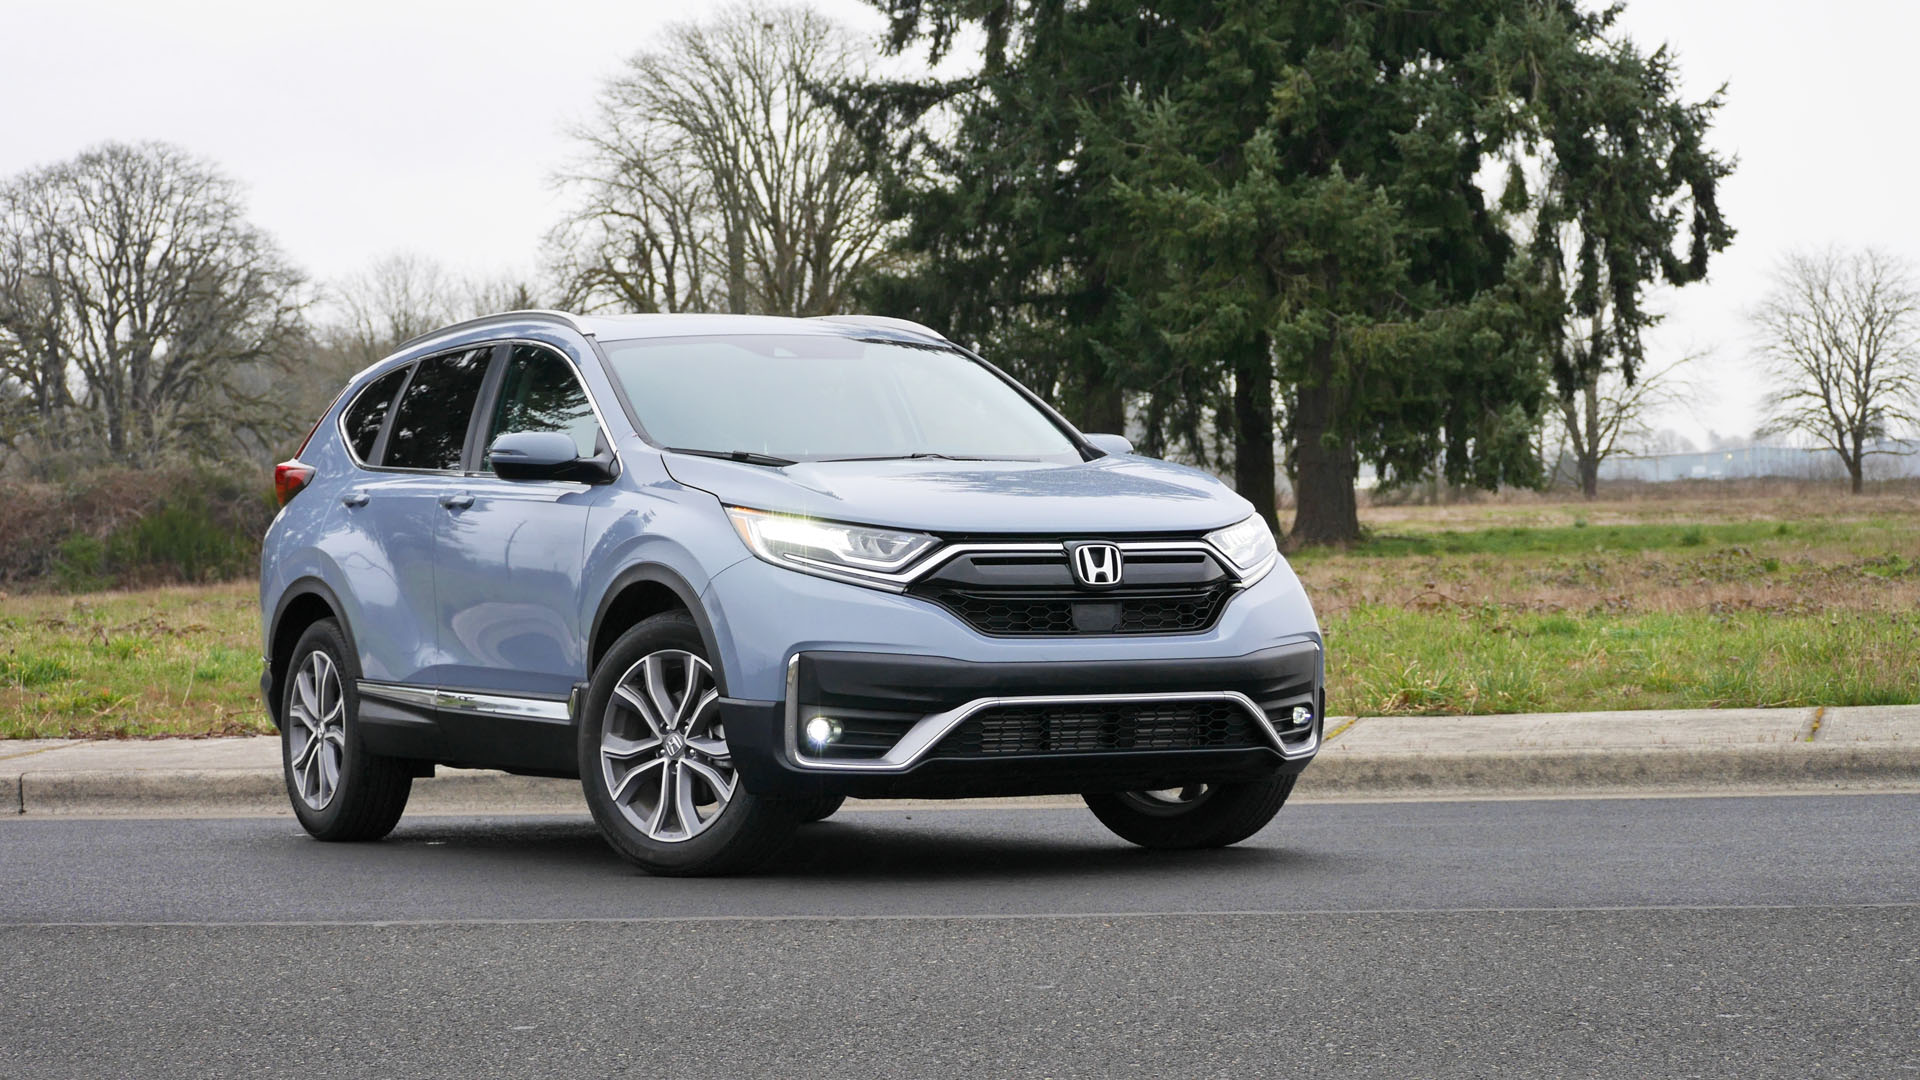 Honda Cr V Reviews Price Specs Features And Photos Autoblog